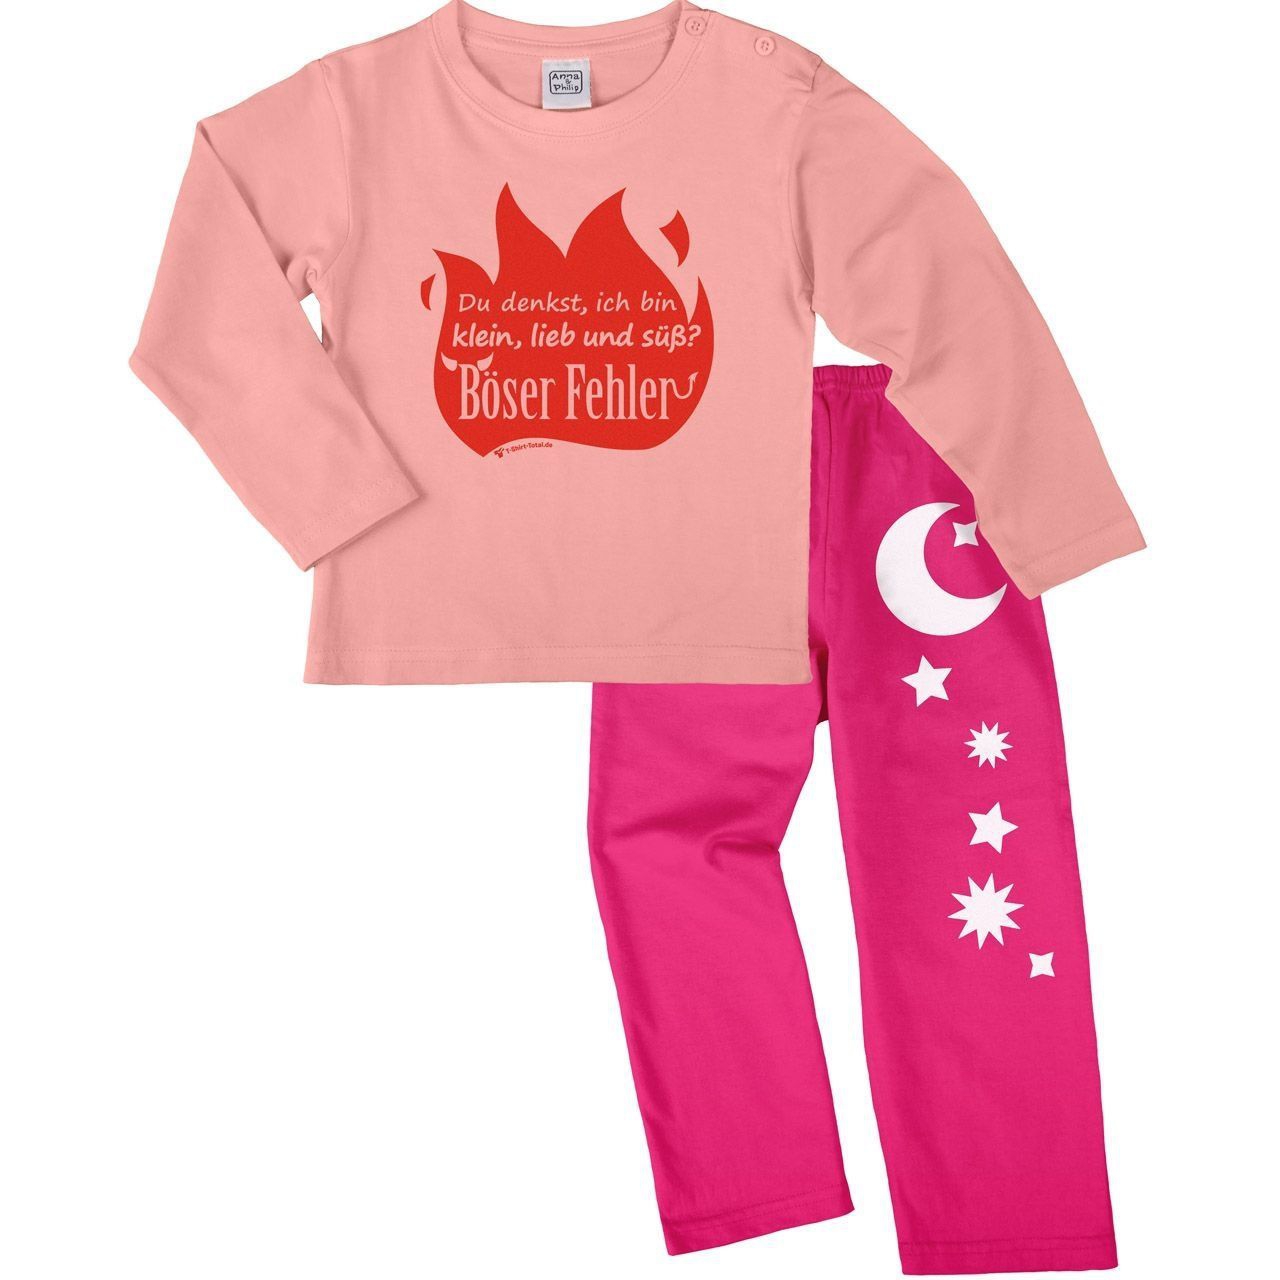 Böser Fehler Pyjama Set rosa / pink 110 / 116